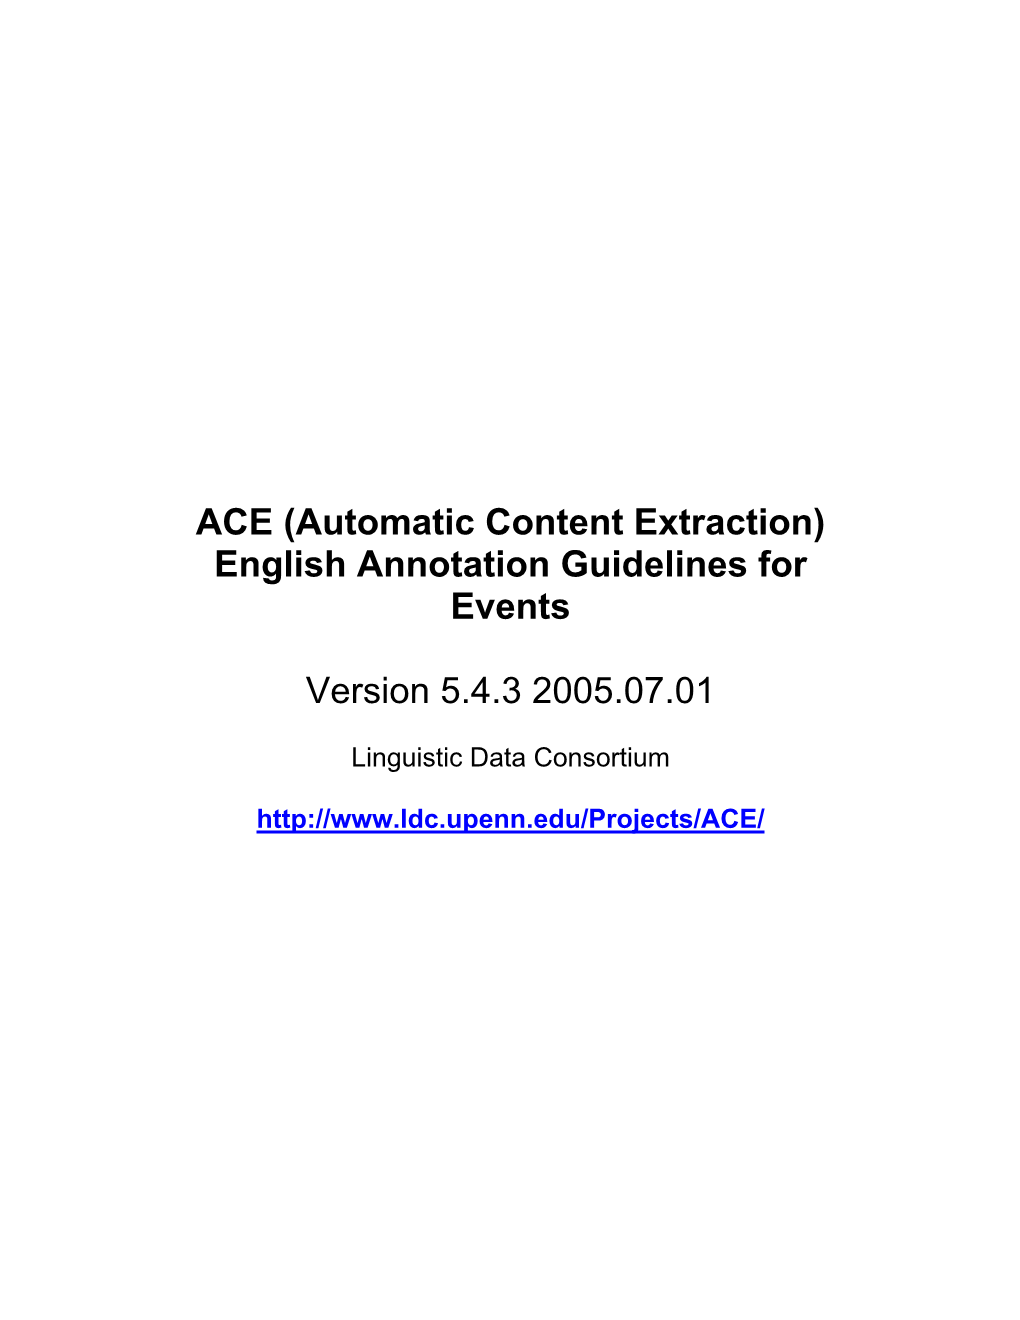 ACE Event Descriptions